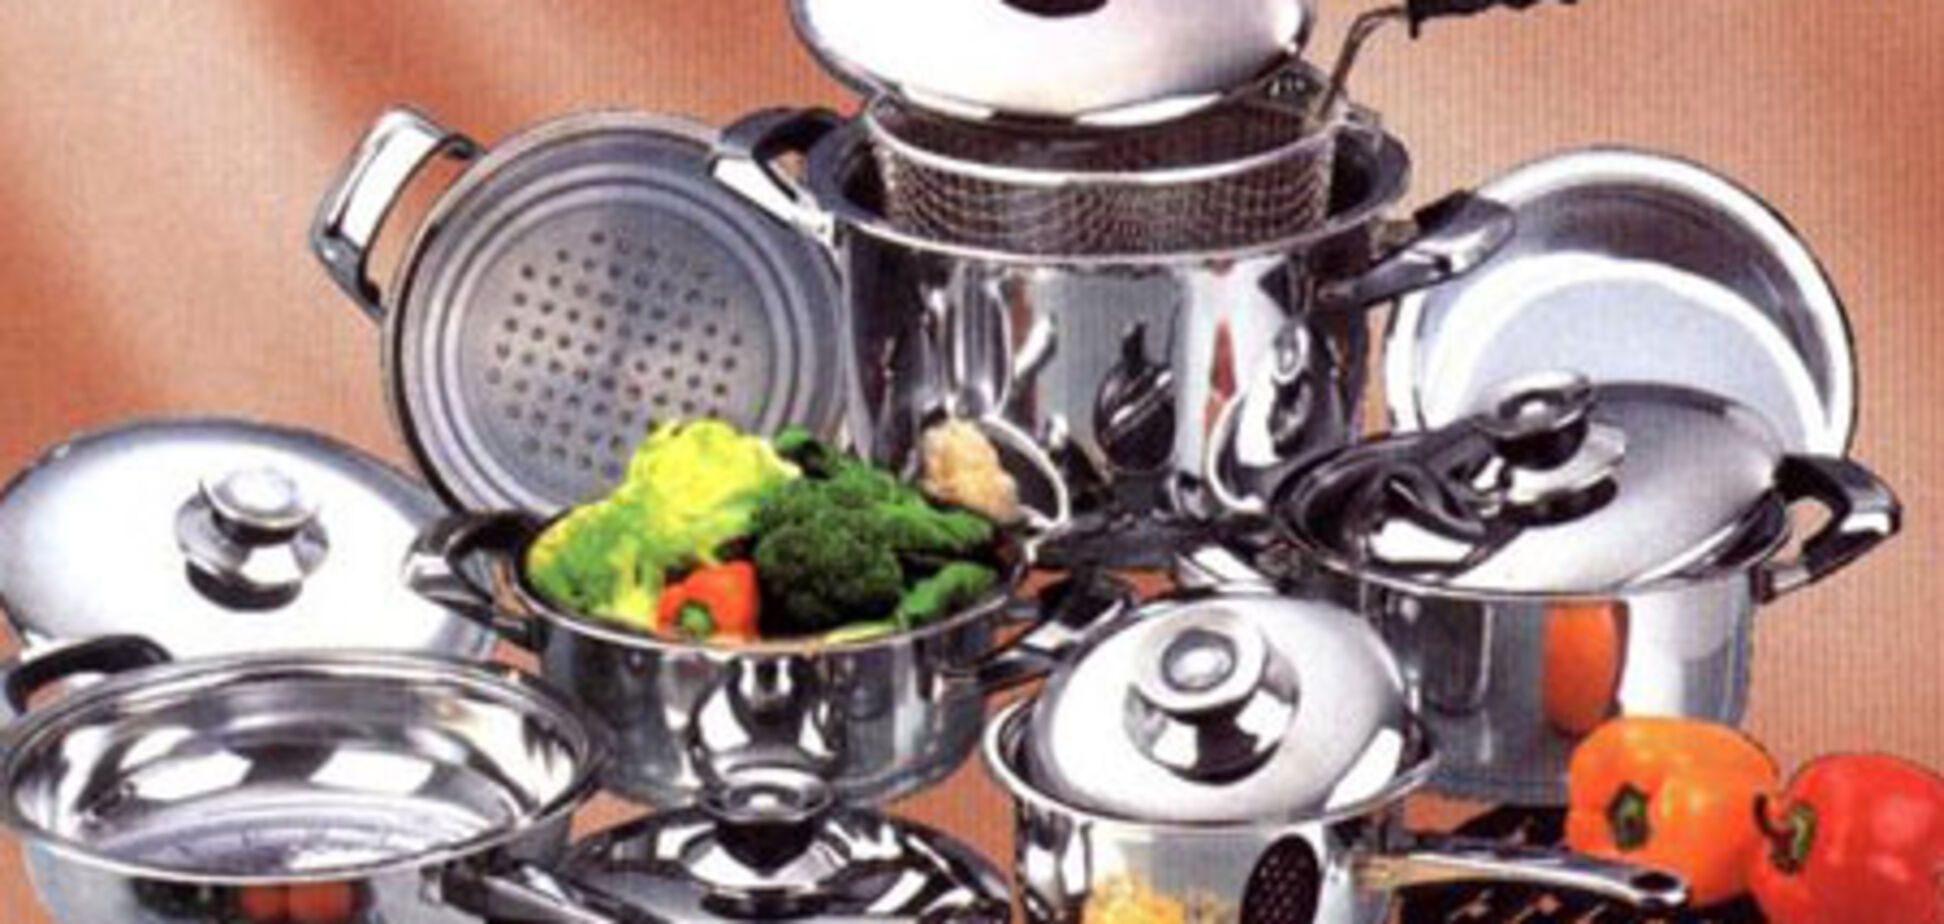 Основные инструменты, приспособления и посуда, необходимые на кухне